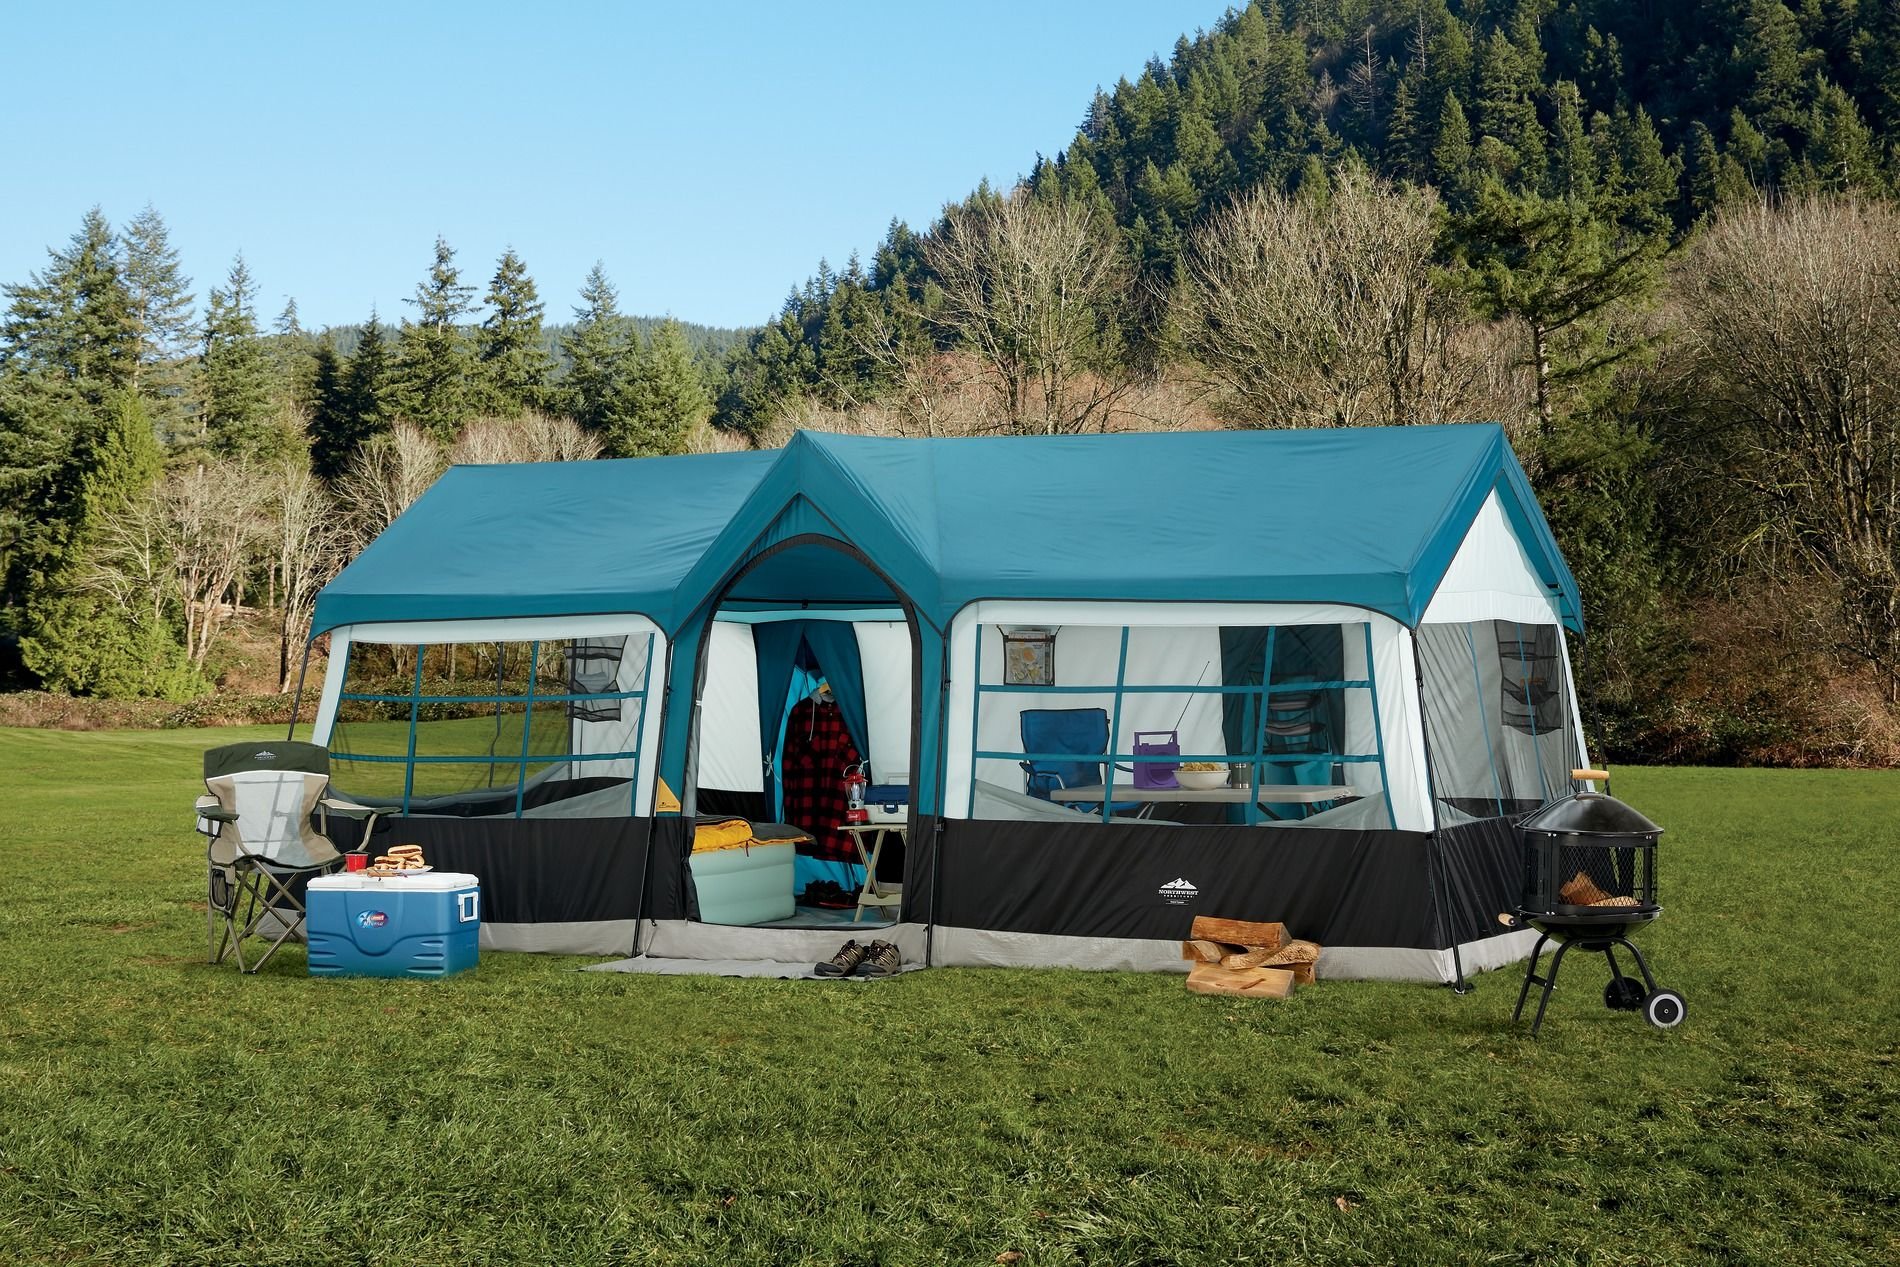 Кемпинг поход. Палатка кемпинг домик зеленый xyp602. Лагерь модульный (шатер и 2 палатки) Nash Base Camp. Палатка papallona Delta Cabin PP-206. Палатка Grand Canyon Family Adventure Camping.